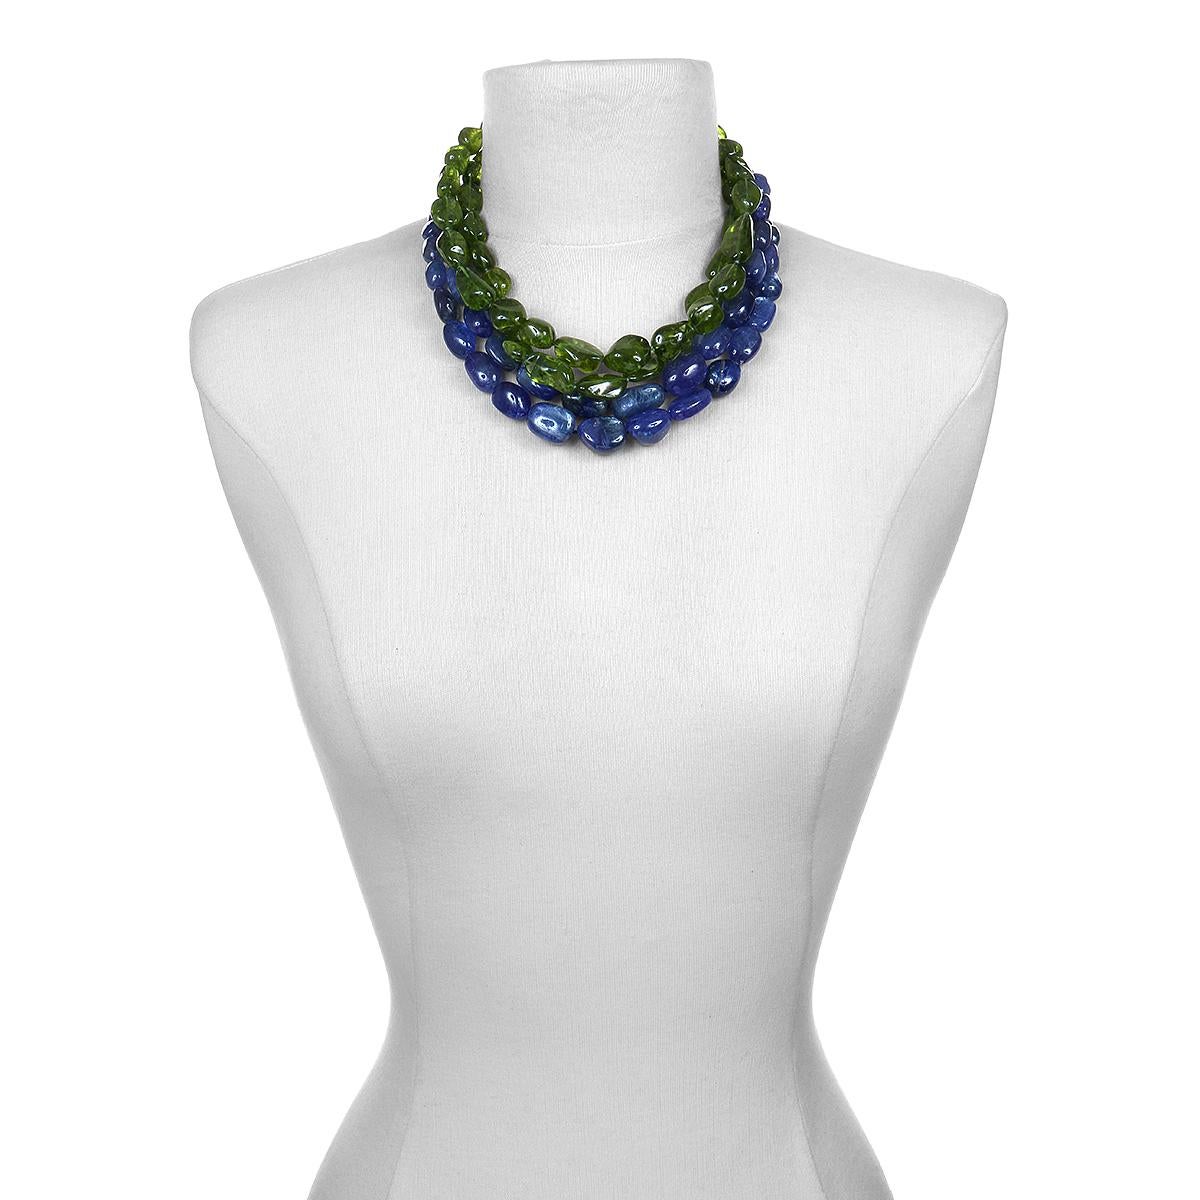 peridot beads necklace